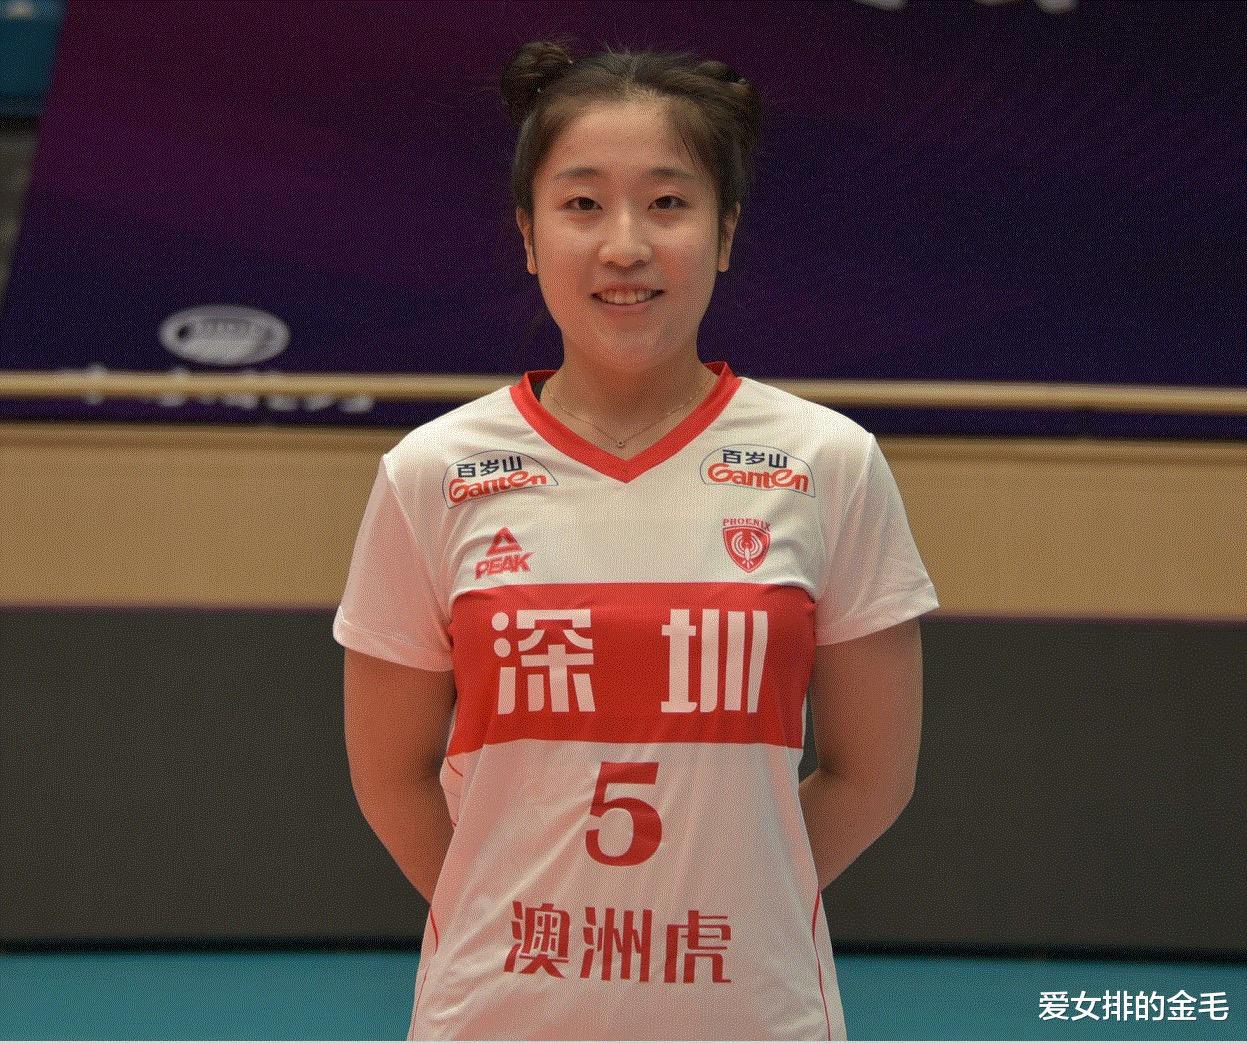 唯一参加欧冠的中国队员，她得到多俱乐部看中！国家队请给她机会(2)